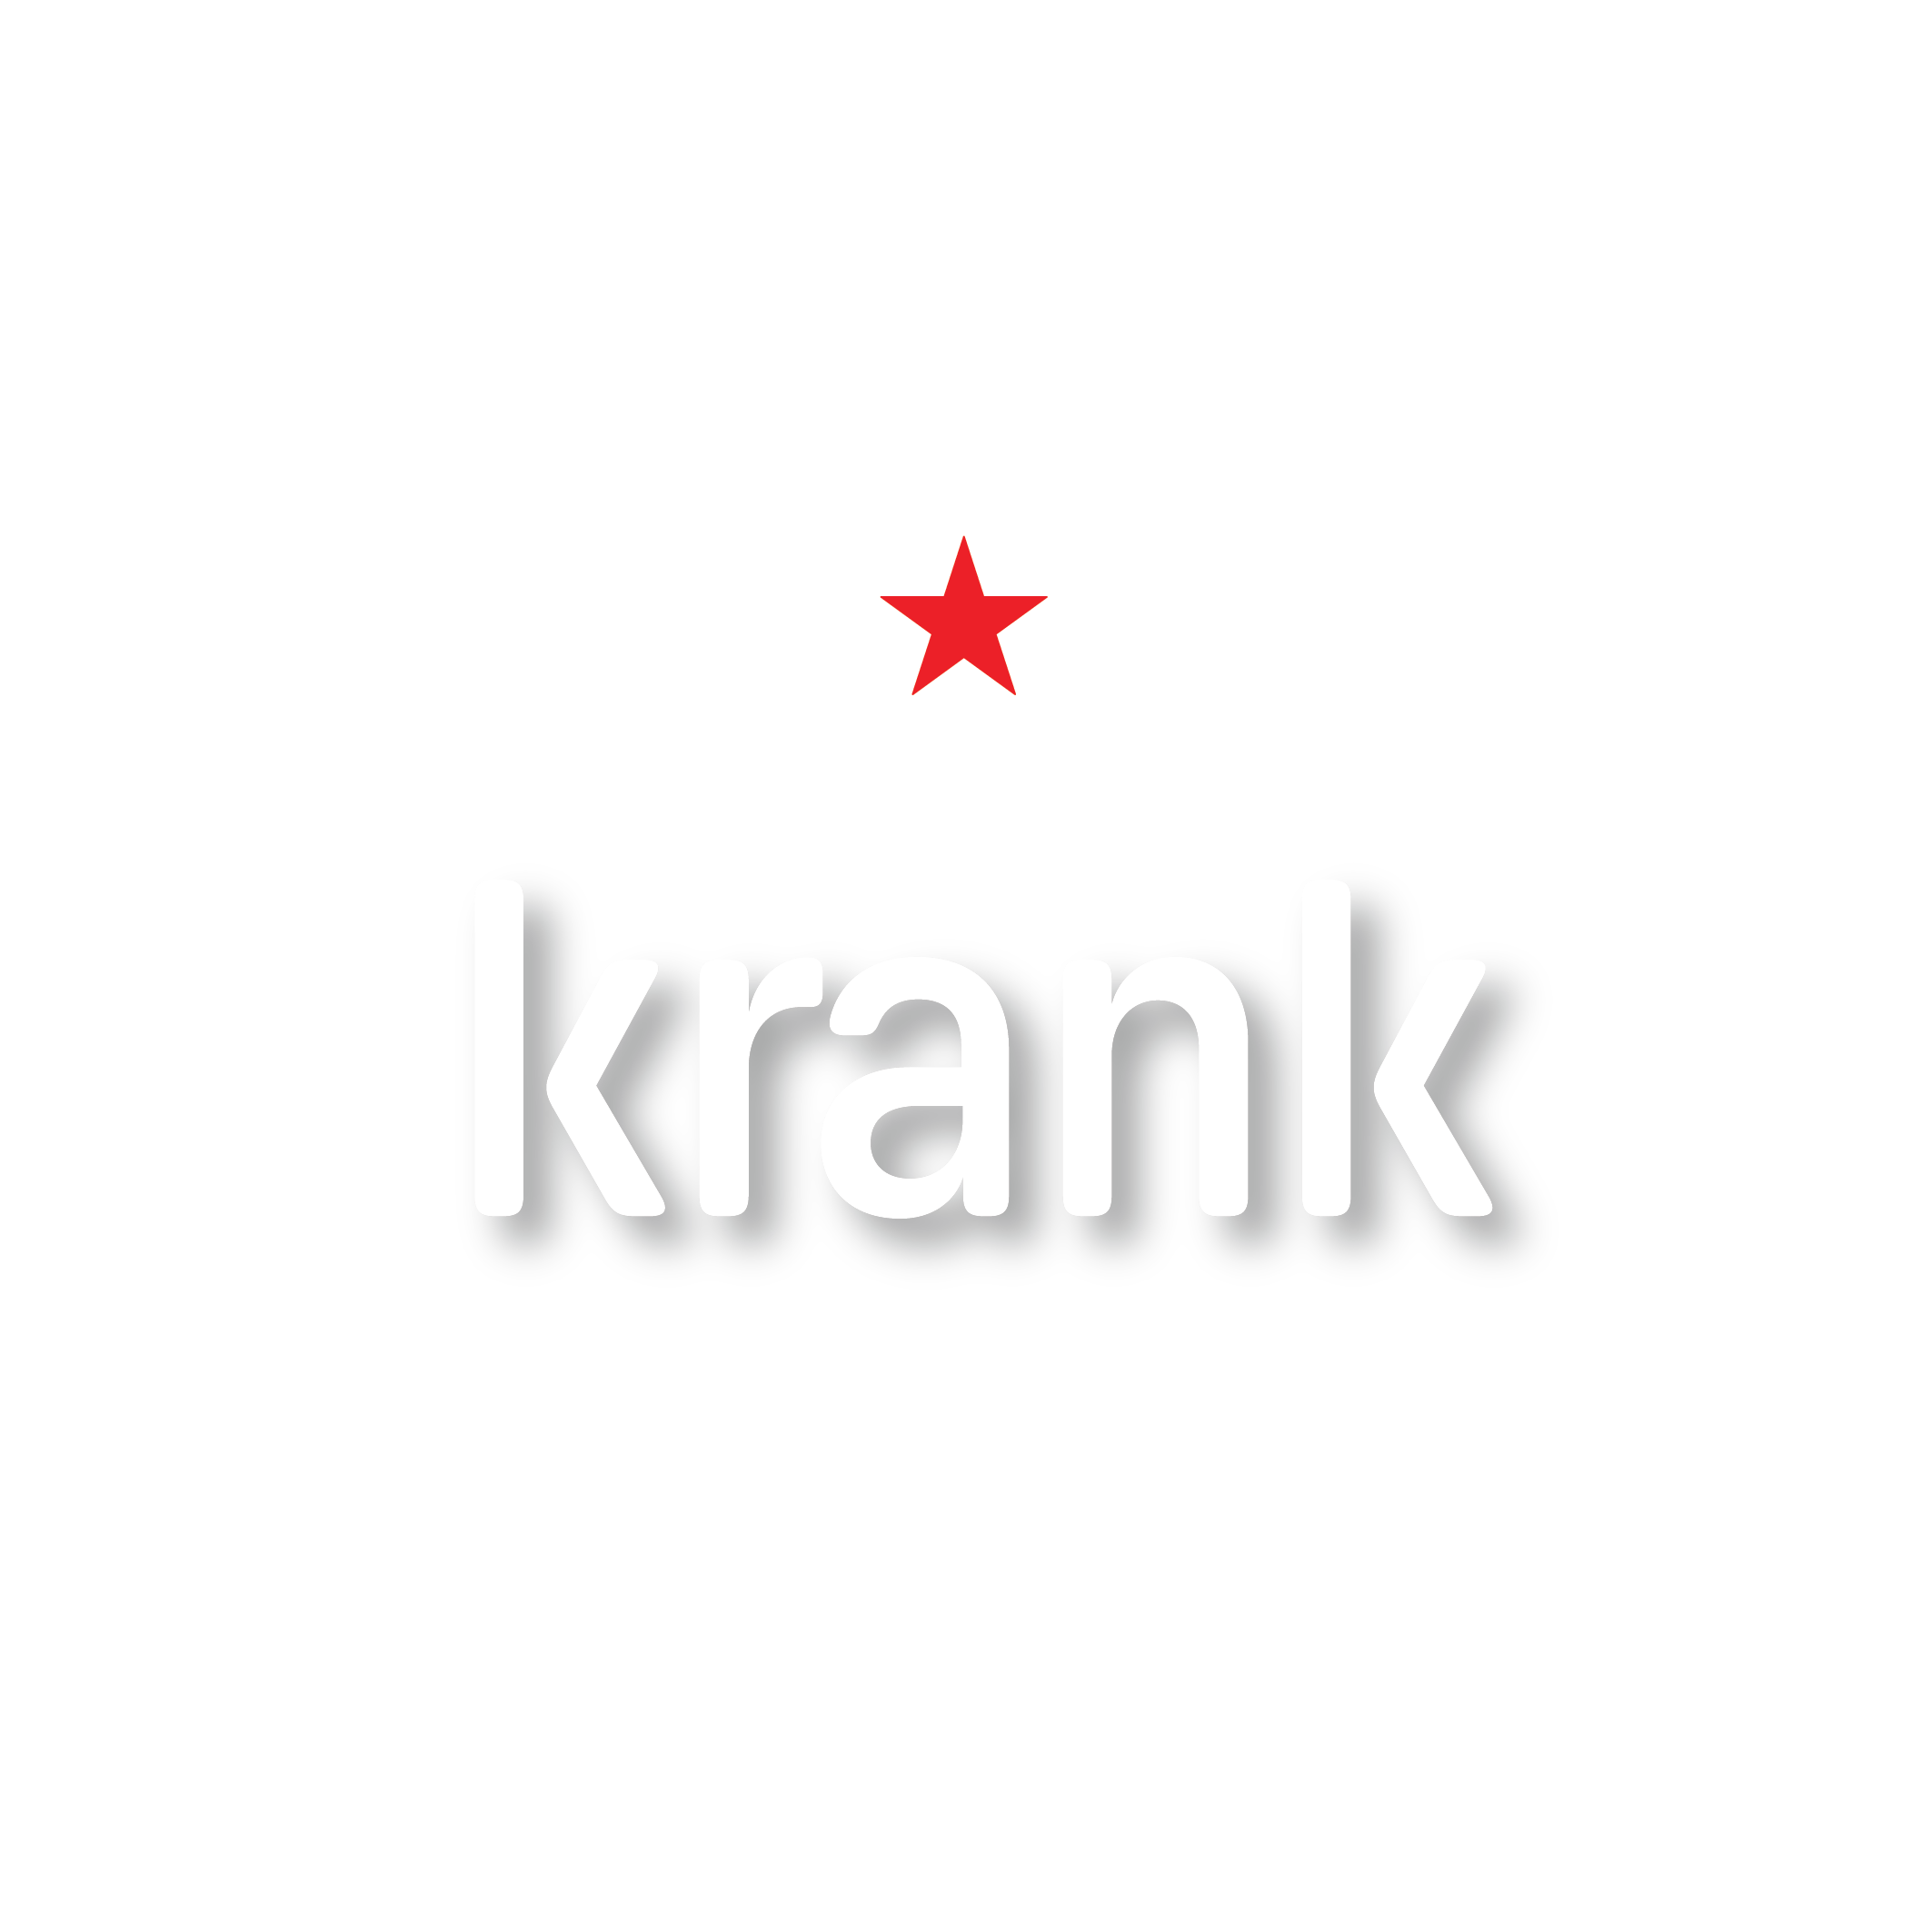 heineken-krank-goa-logo-02.png